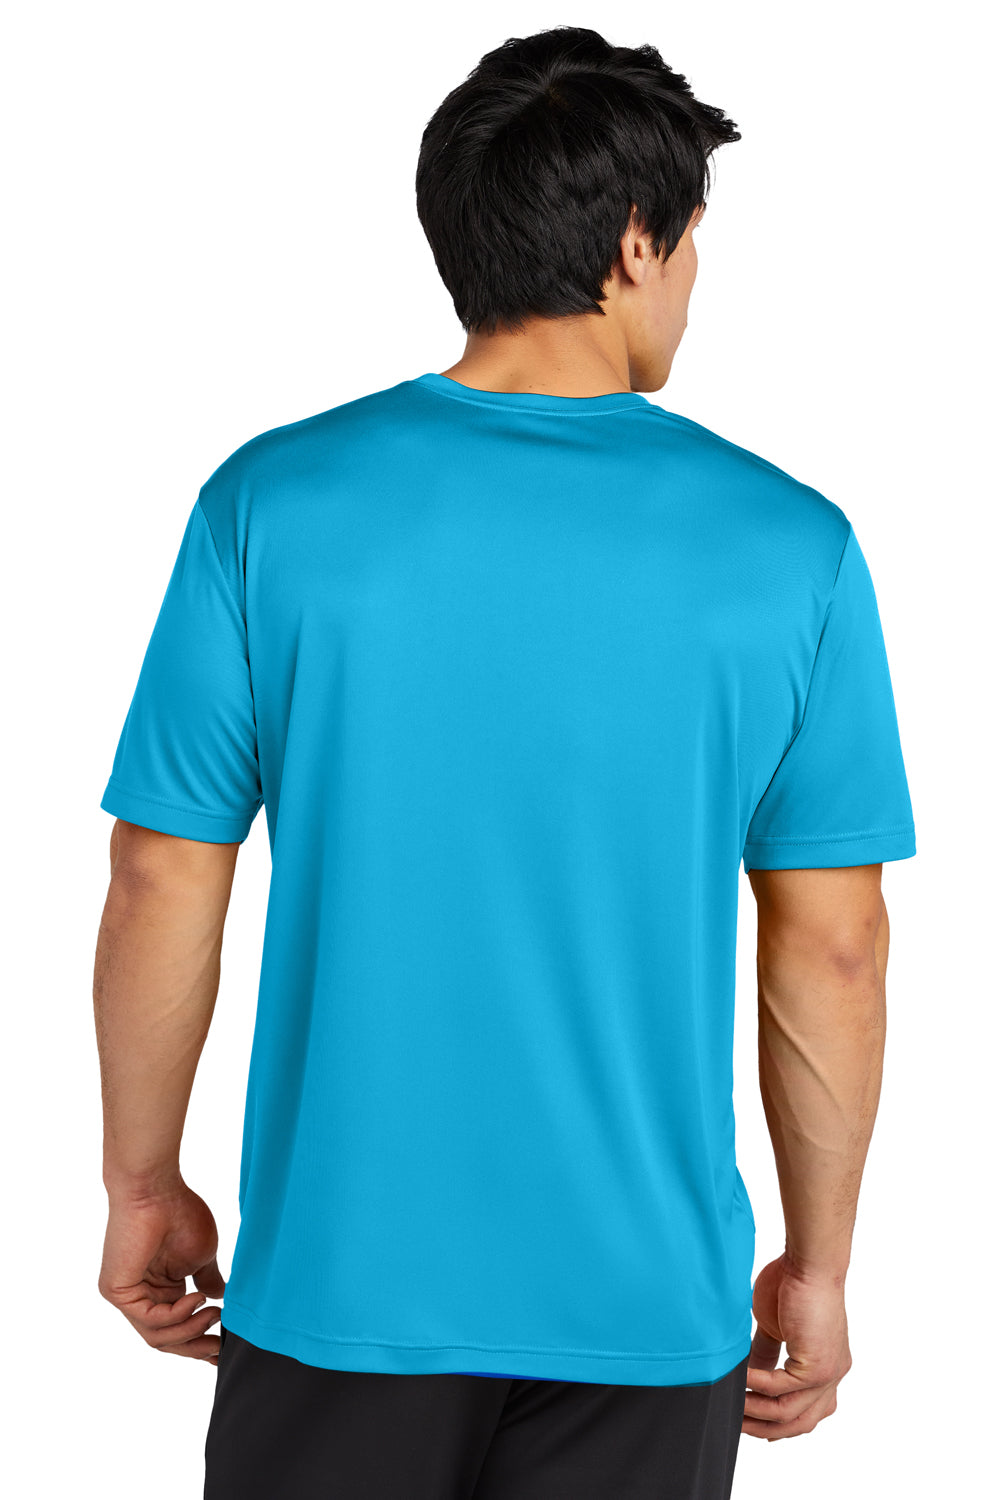 Sport-Tek ST720 Re-Compete PosiCharge Short Sleeve Crewneck T-Shirt Atomic Blue Back